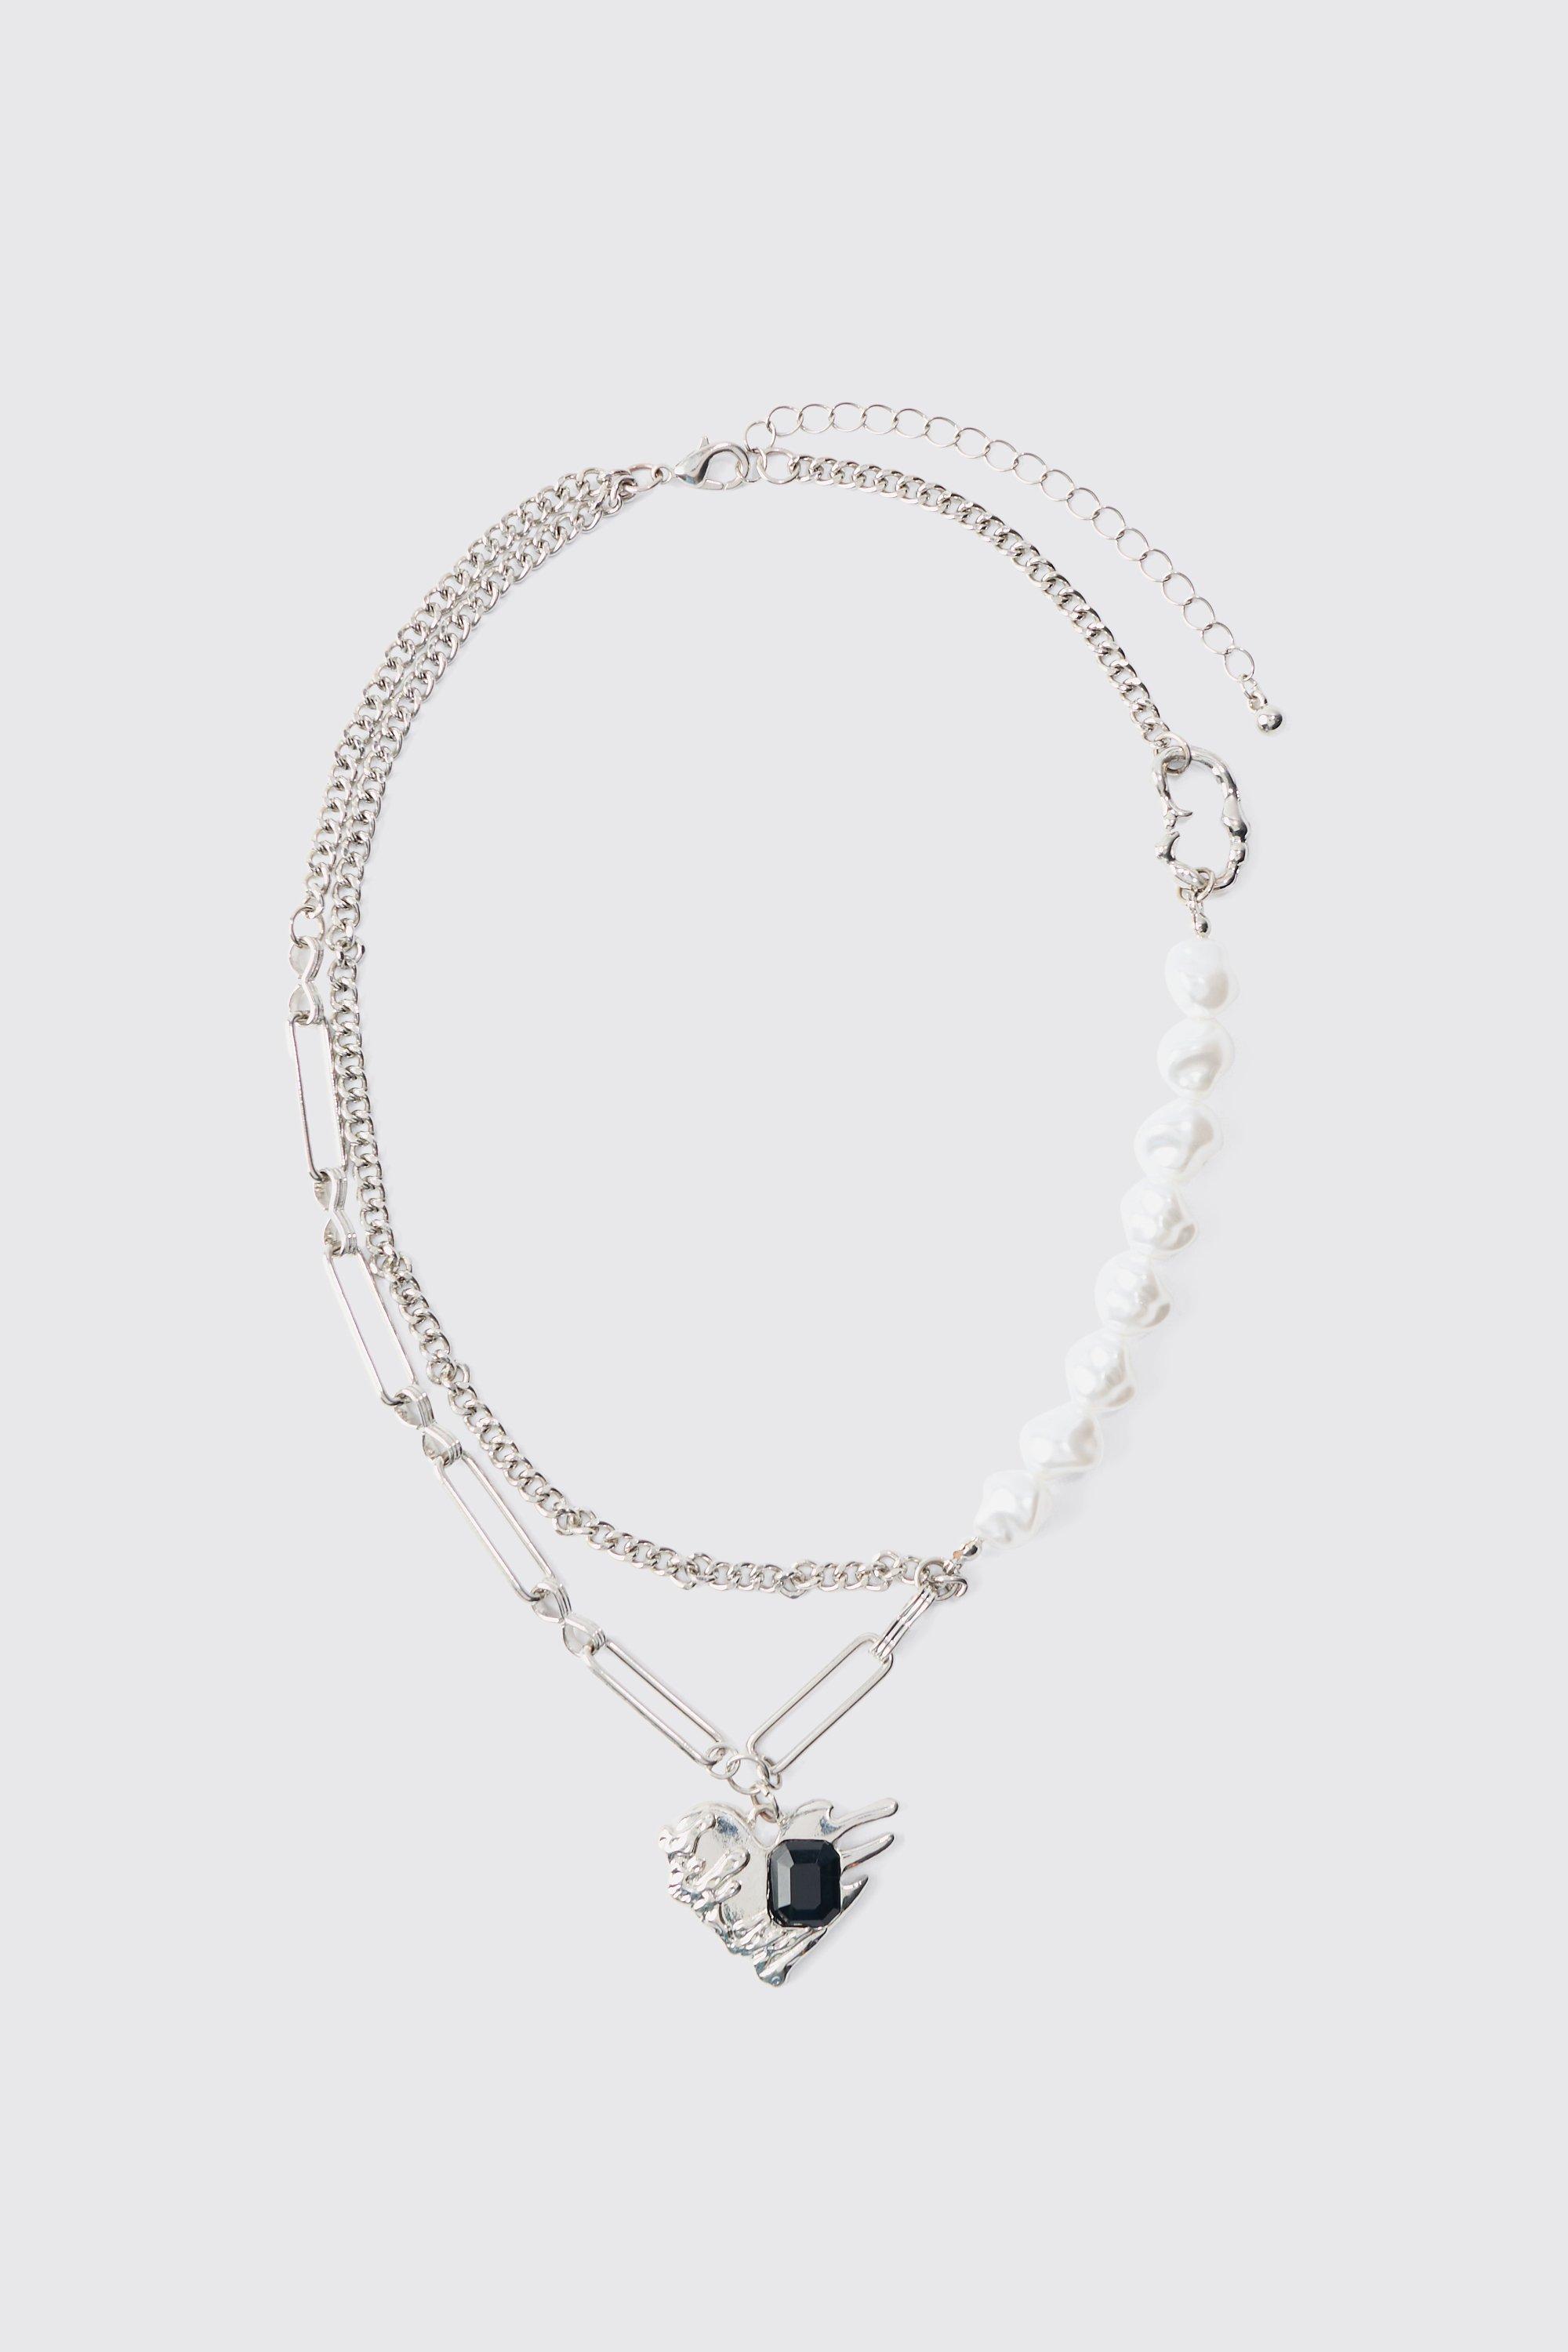 collier perlé à pendentif cœur homme - argent - one size, argent